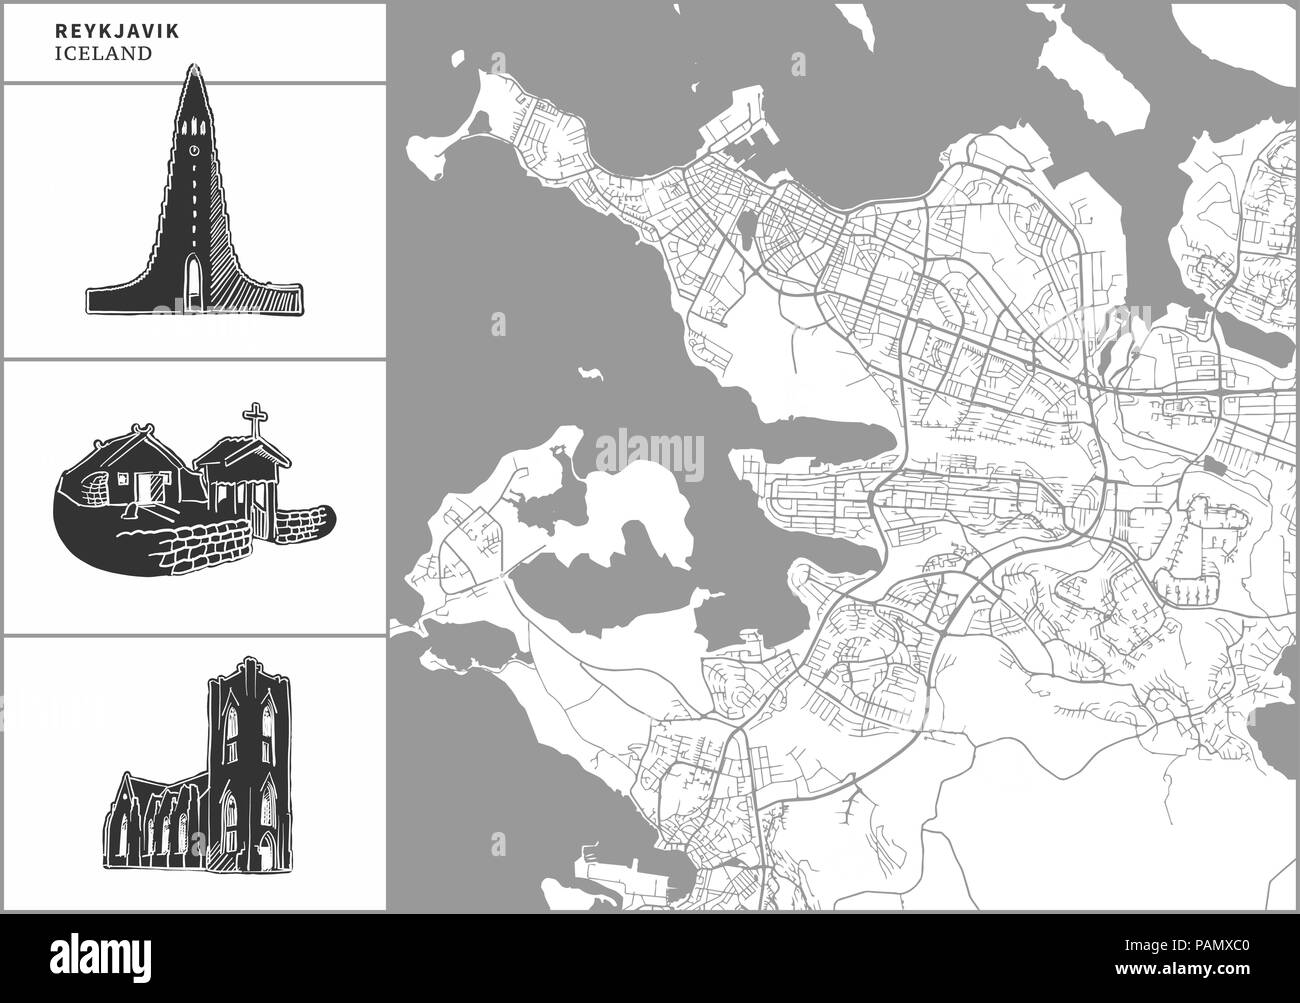 Die Stadt Reykjavik Karte mit Hand gezeichnete Architektur Symbole. Alle drawigns, Karte und Hintergrund für einfache Farbe ändern getrennt. Einfache Neupositionierung im Vektor Stock Vektor